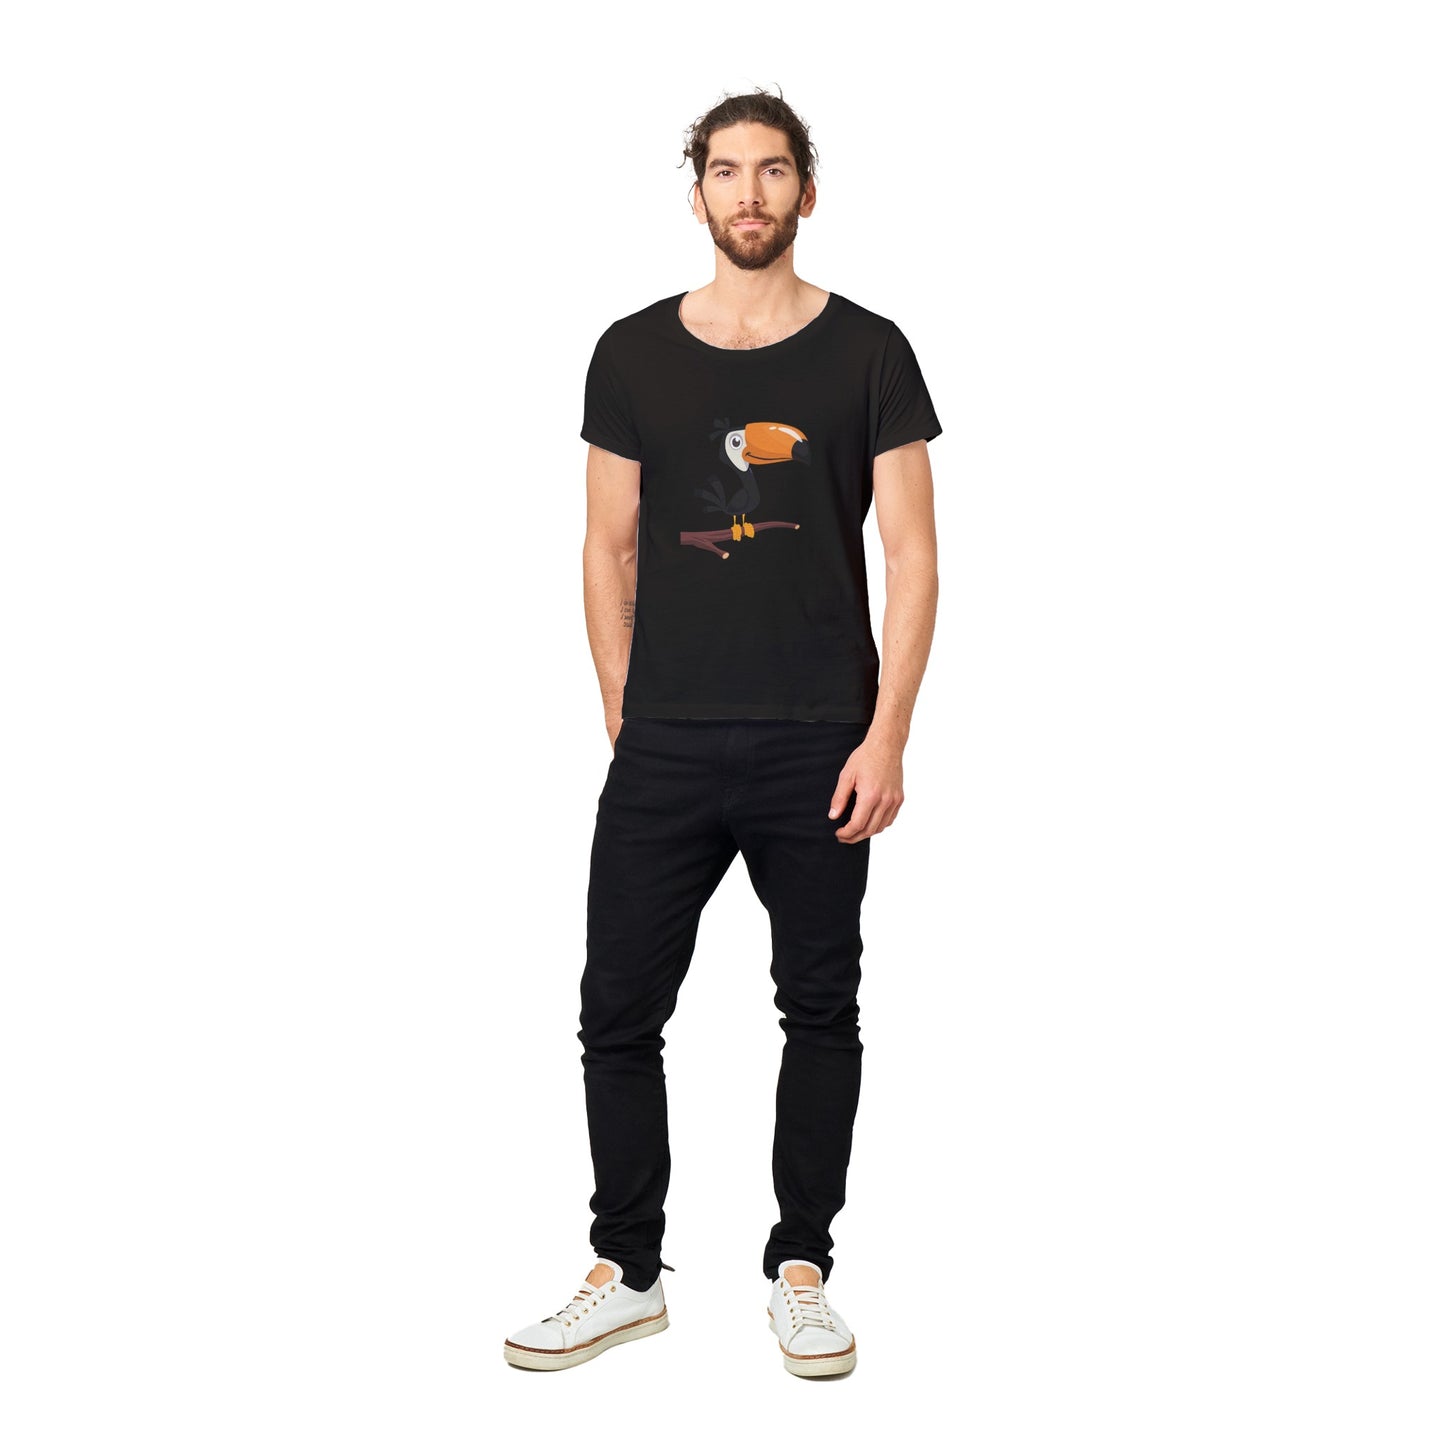 100% Organic Unisex T-shirt/Bird